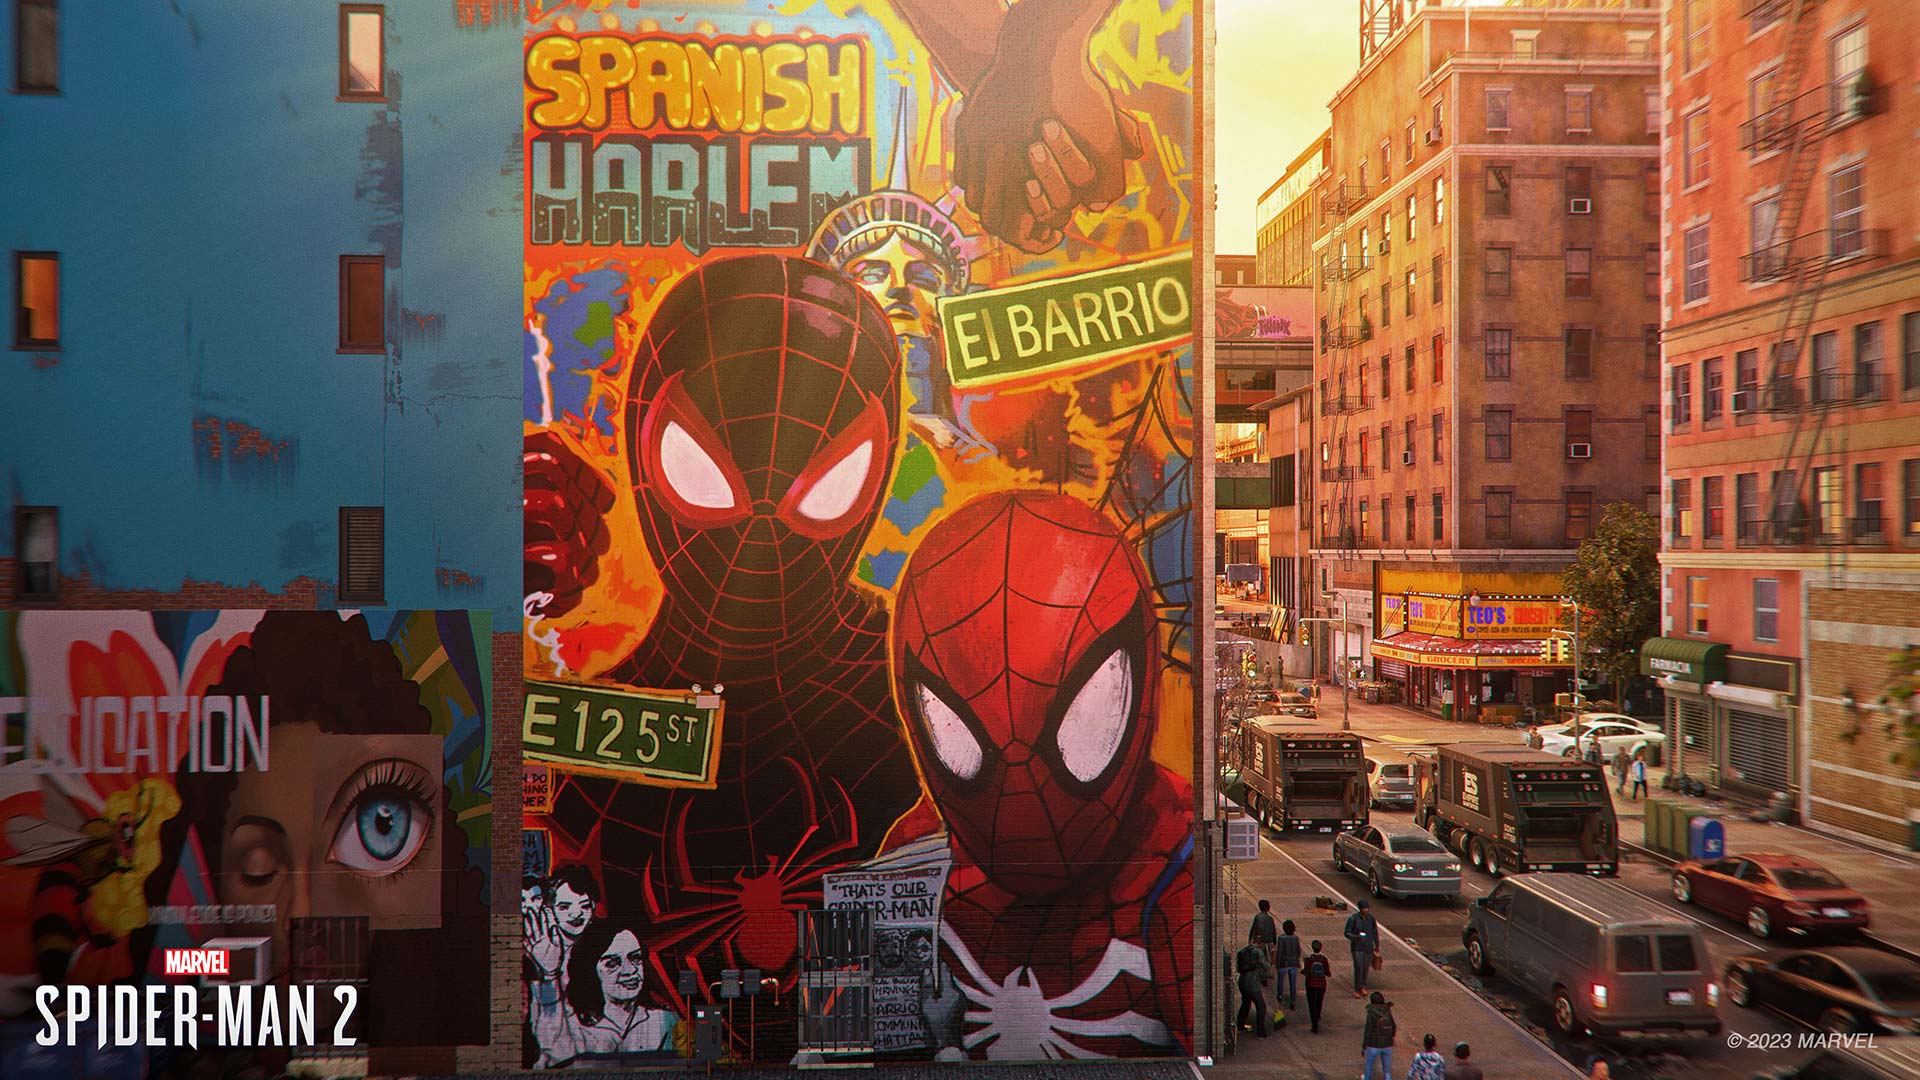 Marvel's Spider-Man 2 Harlem art